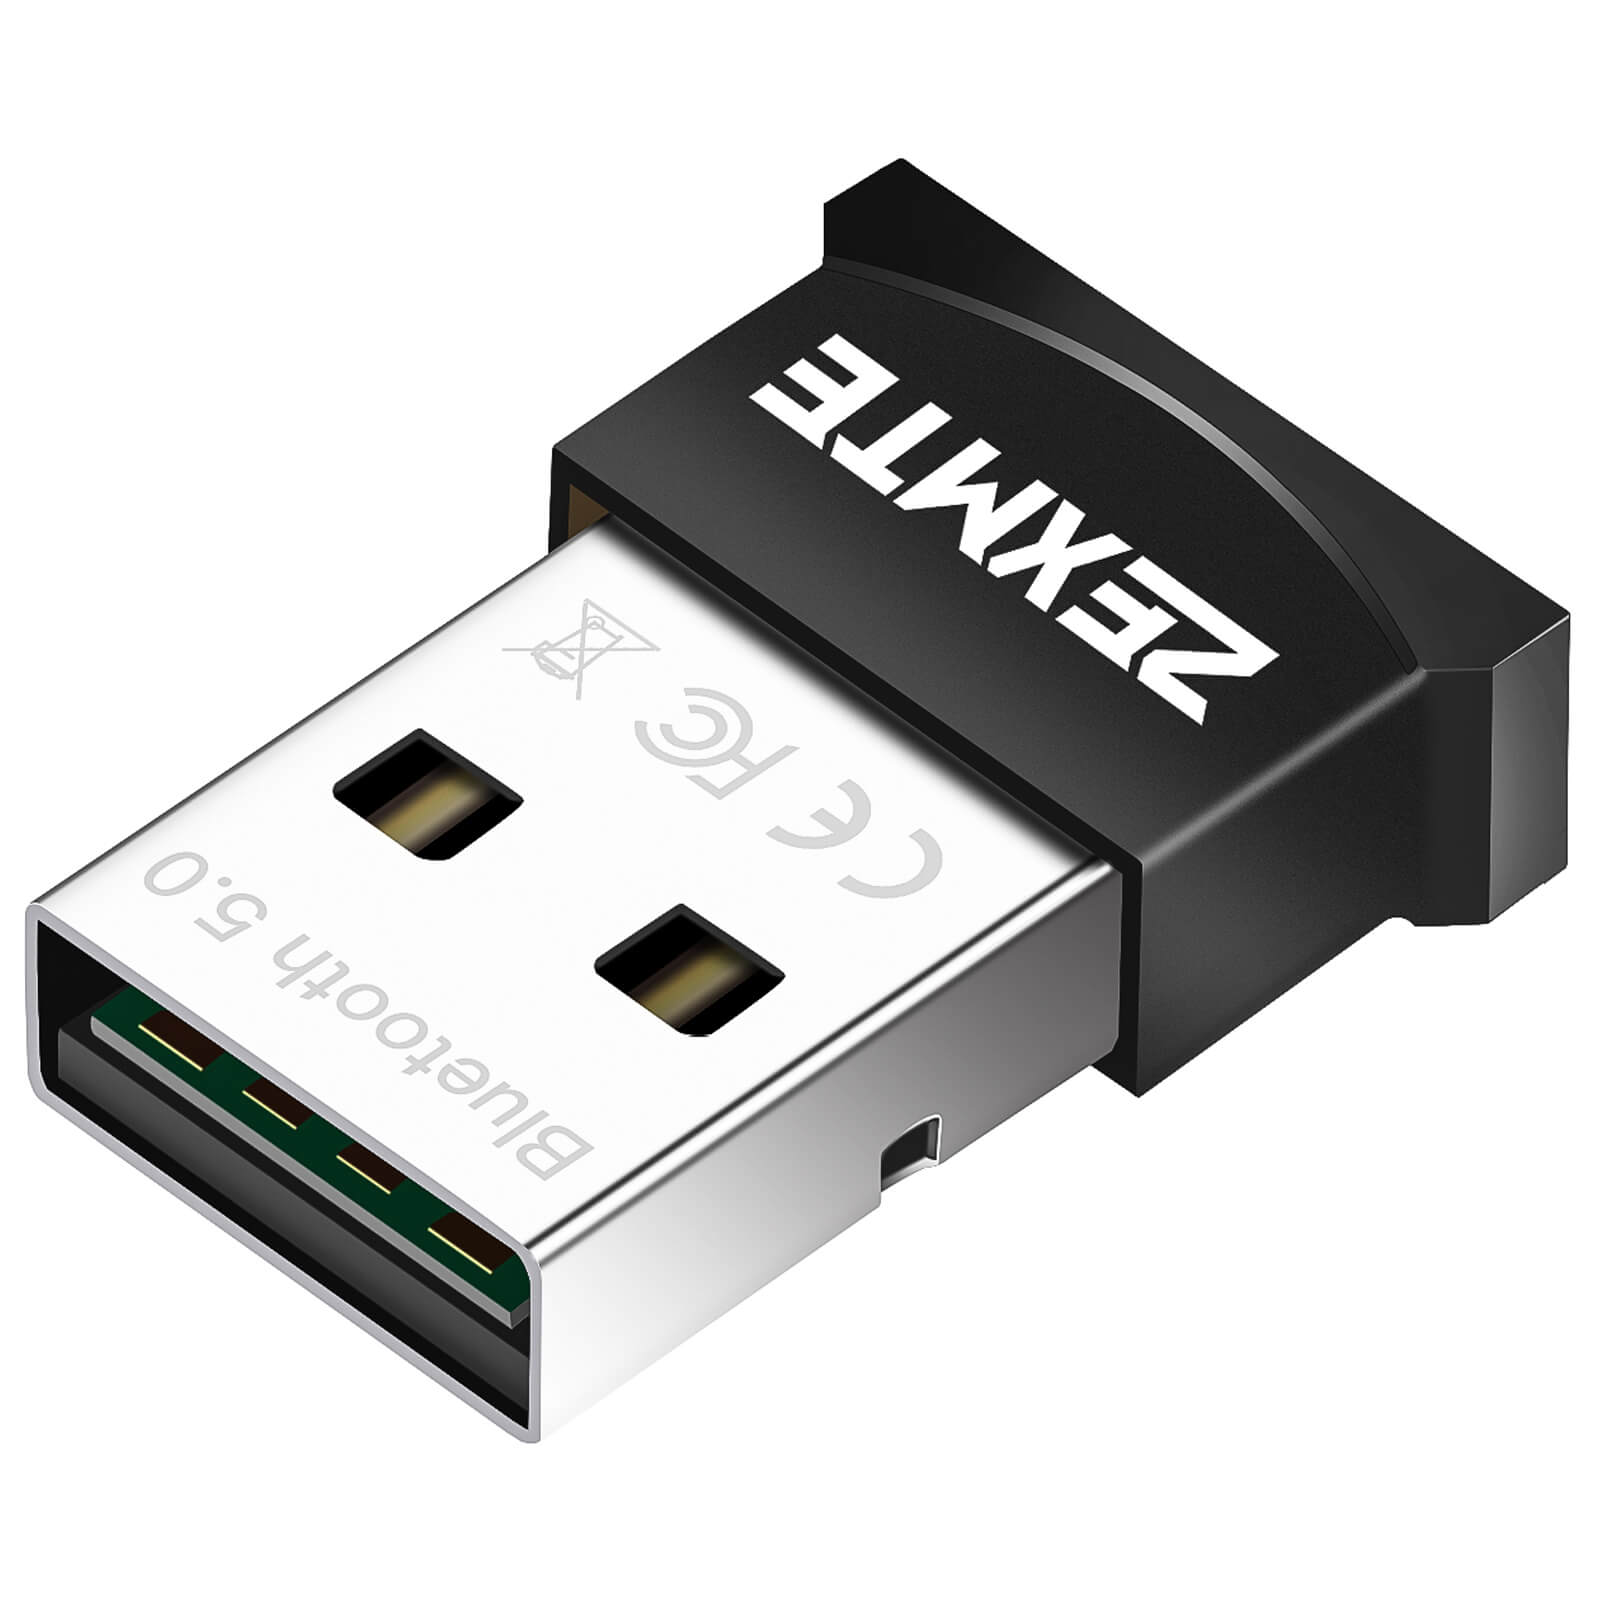 Zexmte USB Bluetooth 5.0 Adapter – zexmte